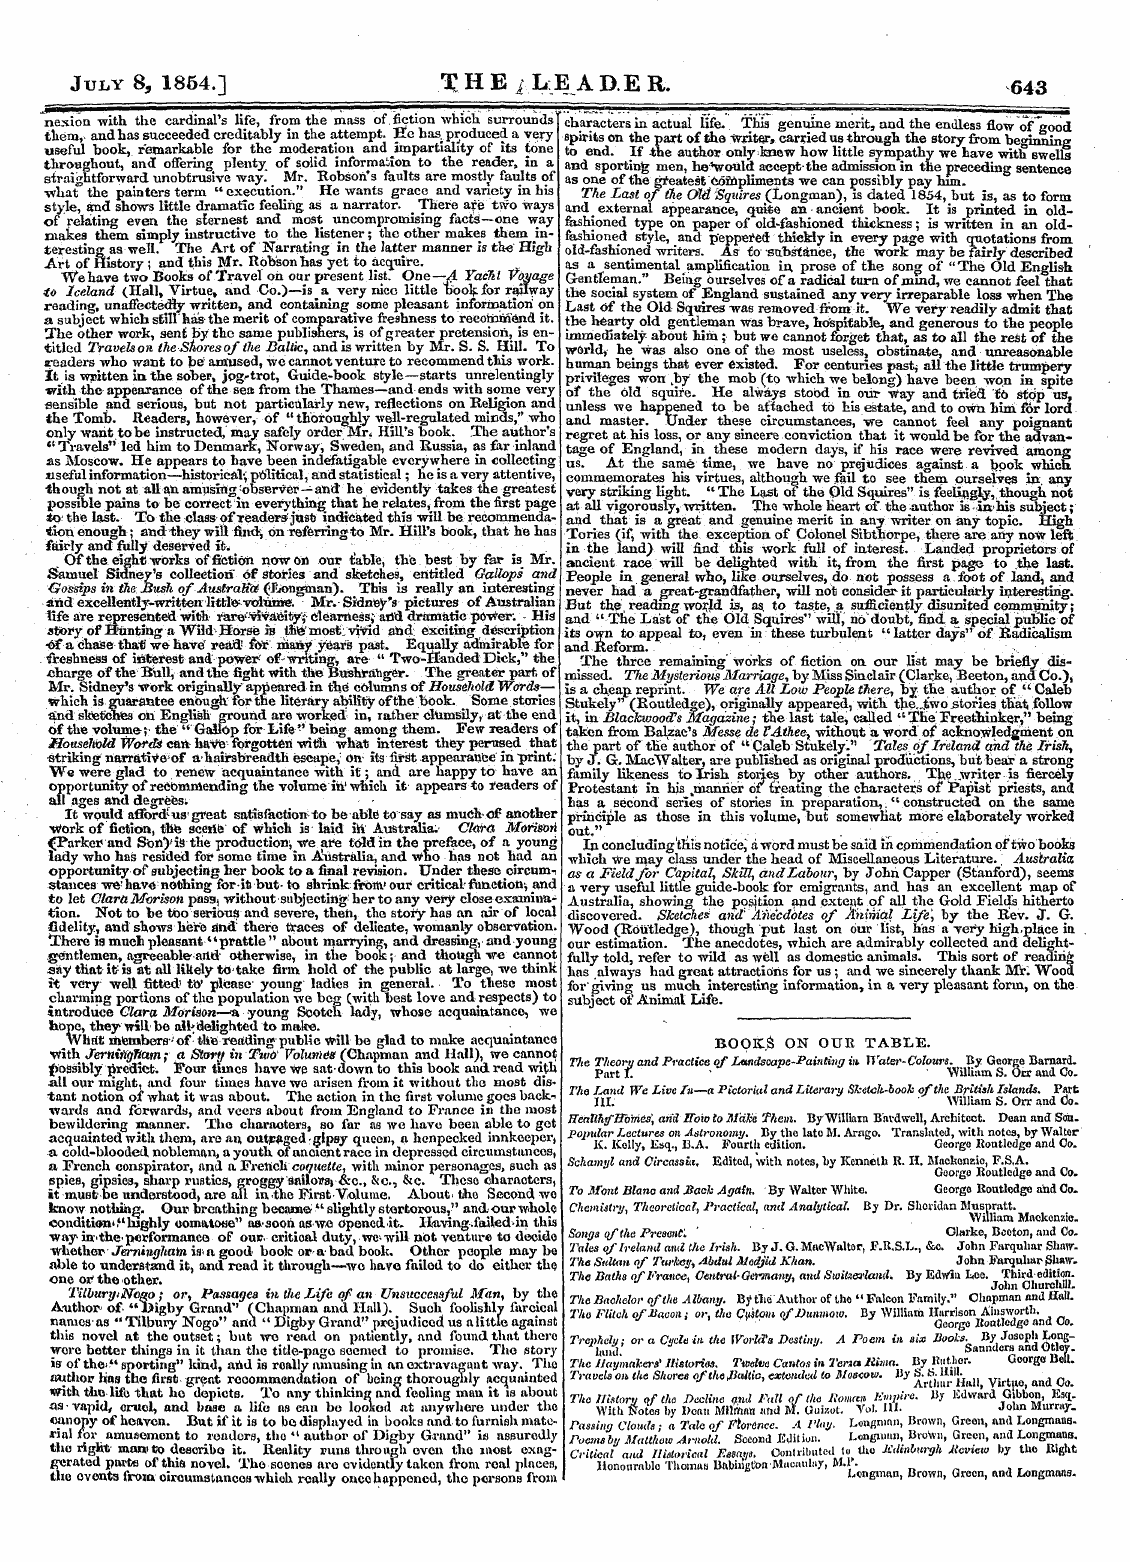 Leader (1850-1860): jS F Y, 2nd edition - July 8, 1864.] T H E /Lea De R. 643